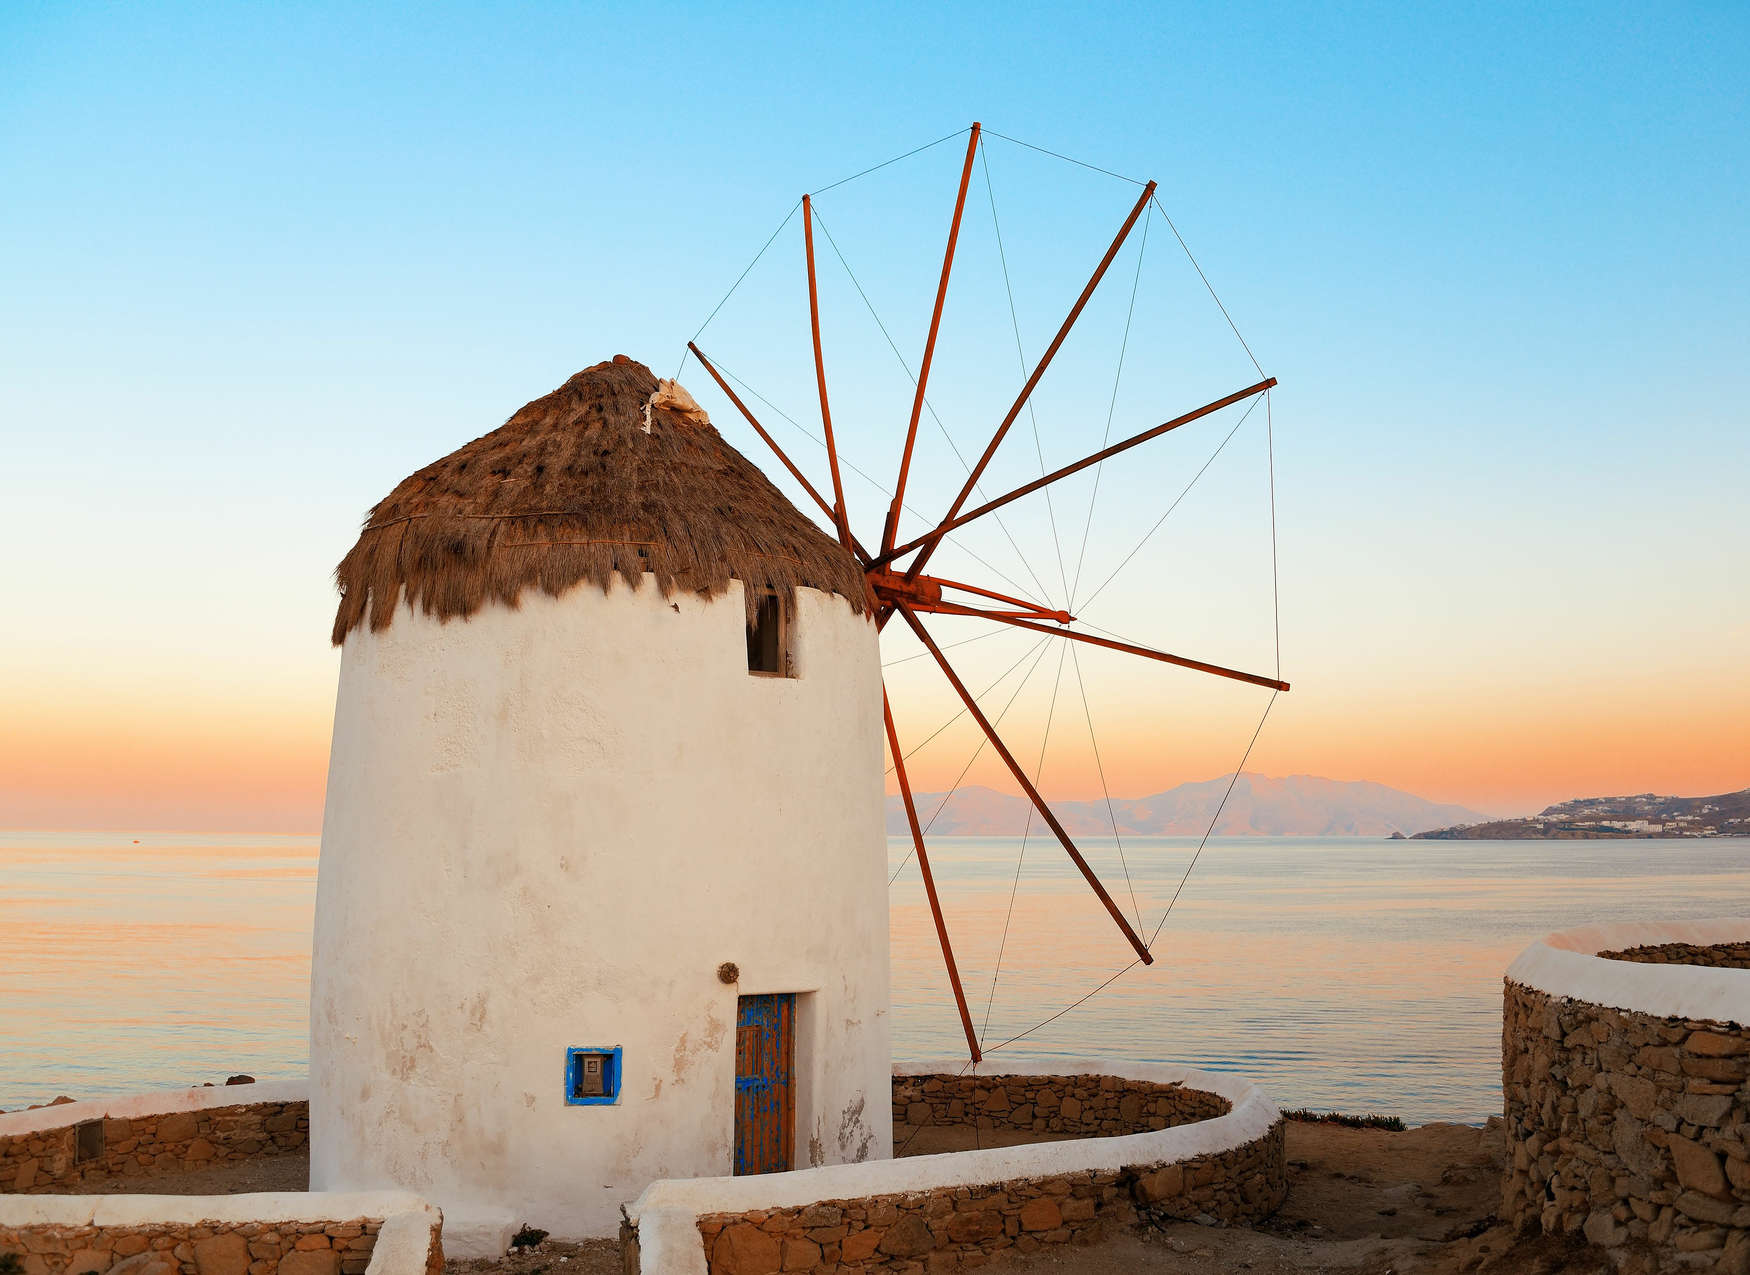             Digital behang Griekse windmolen aan de kust - Blauw, Oranje, Beige
        